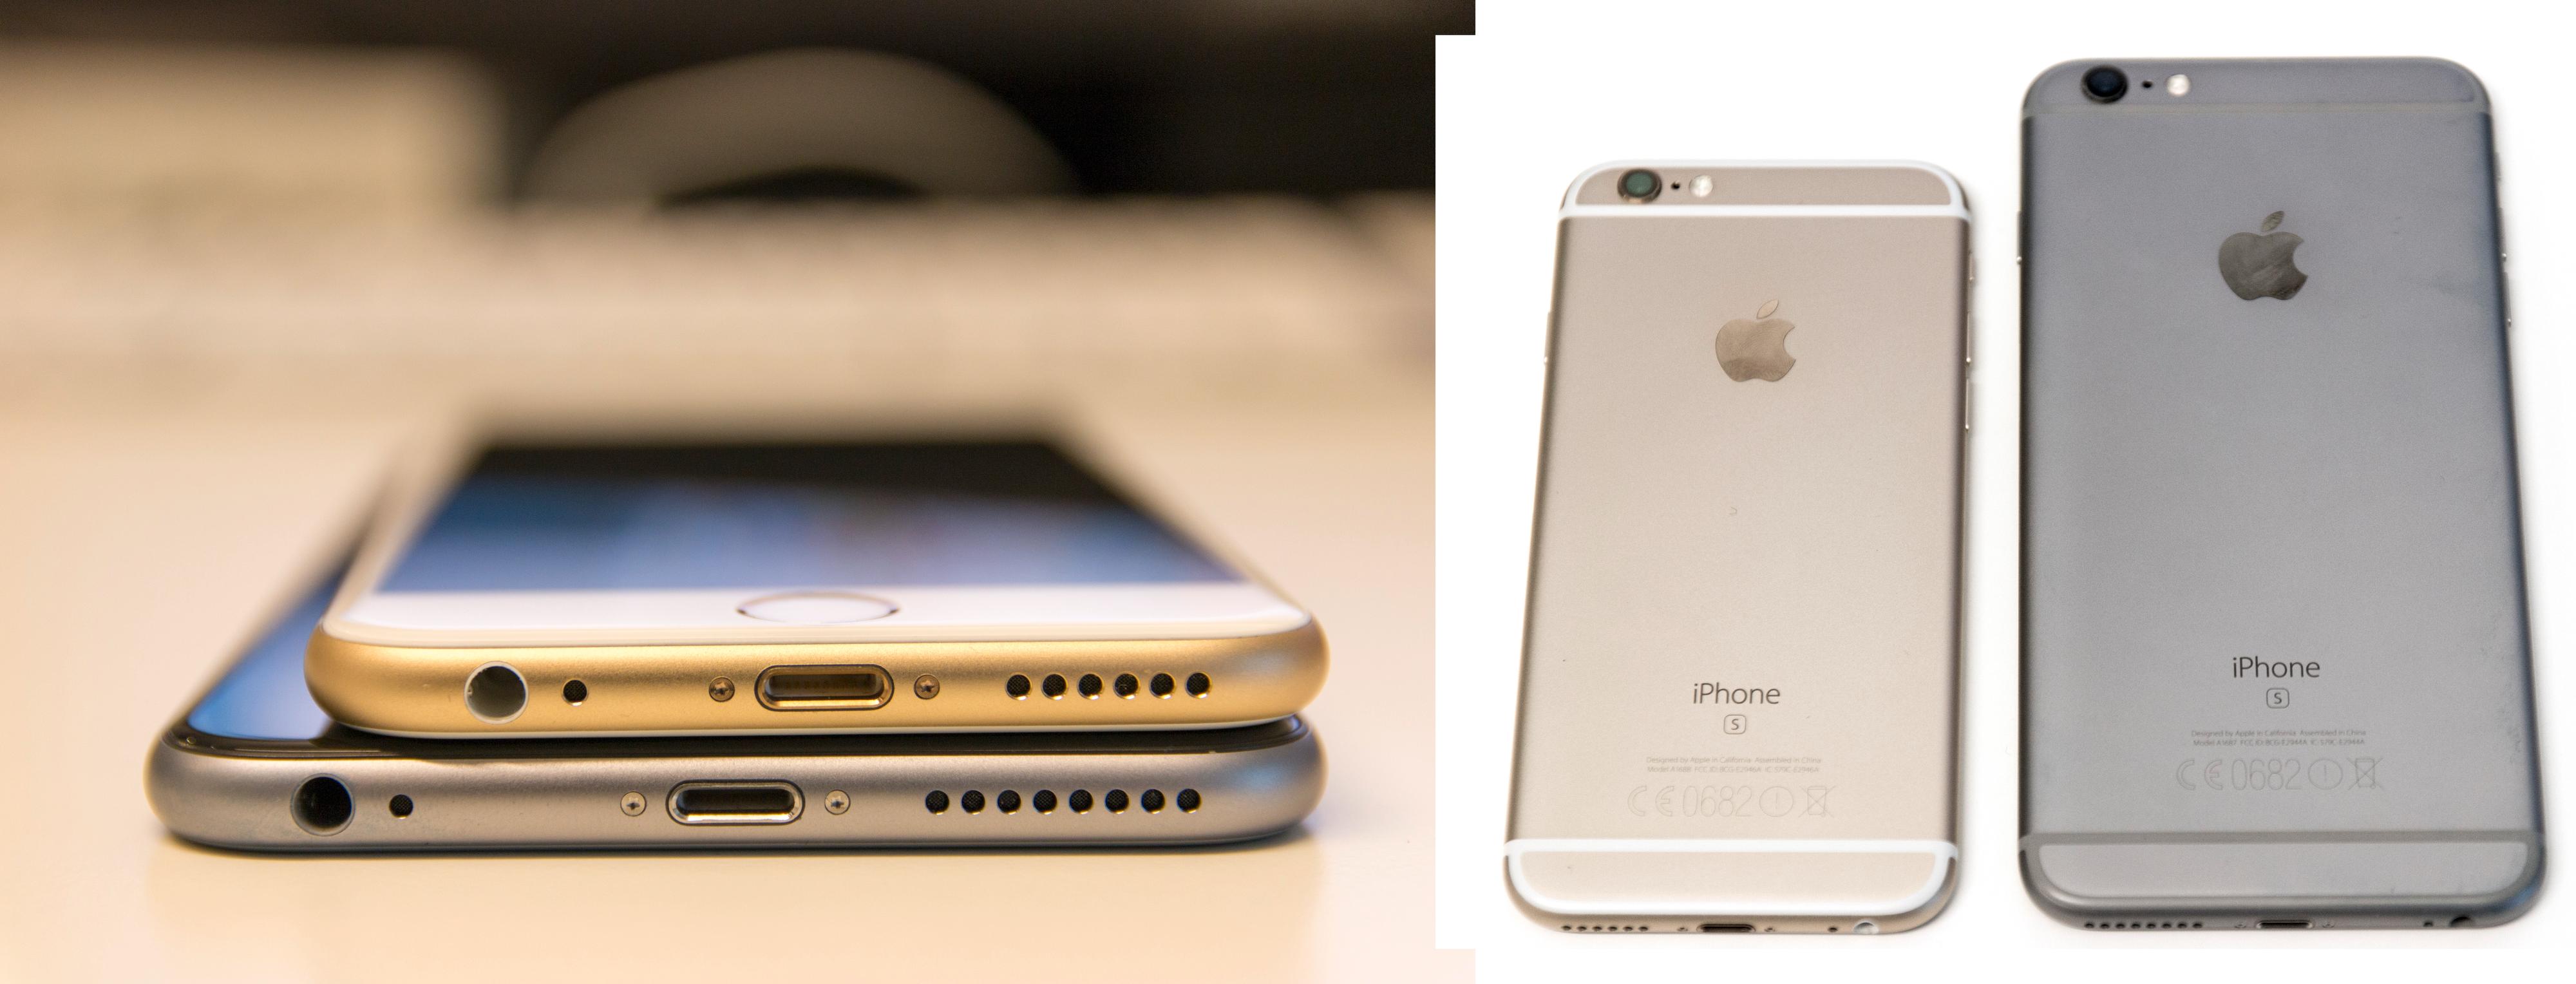 scherp Geld rubber Beheren iPhone 6S Plus - Test - Tek.no